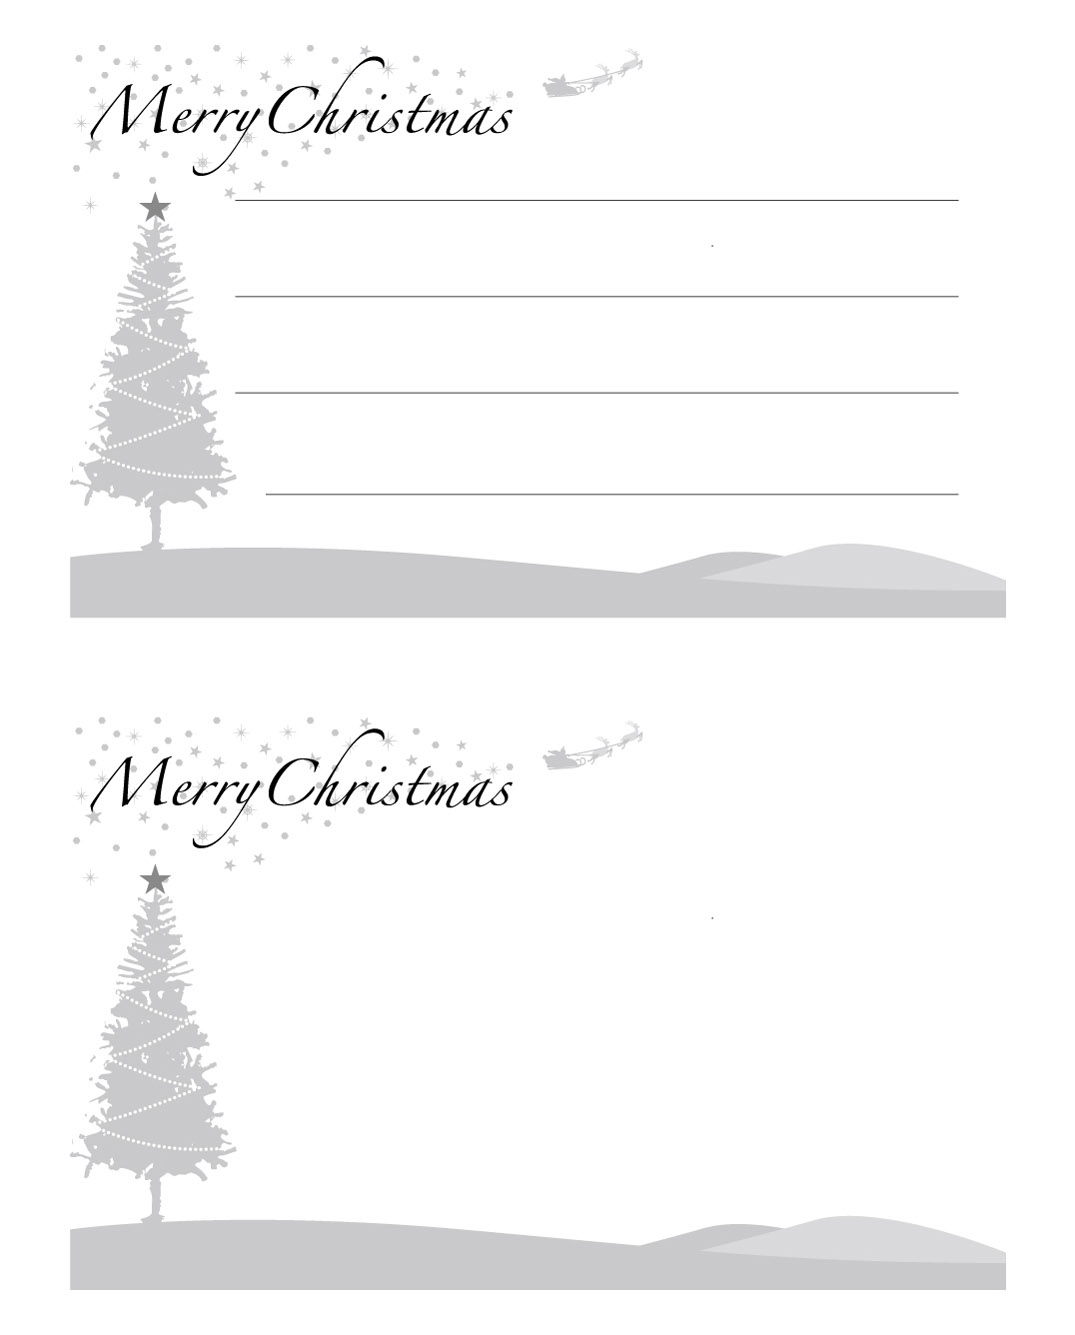 高齢者レク素材 クリスマスカード8 小 カード 介護レク広場 レク素材やレクネタ 企画書 の無料ダウンロード